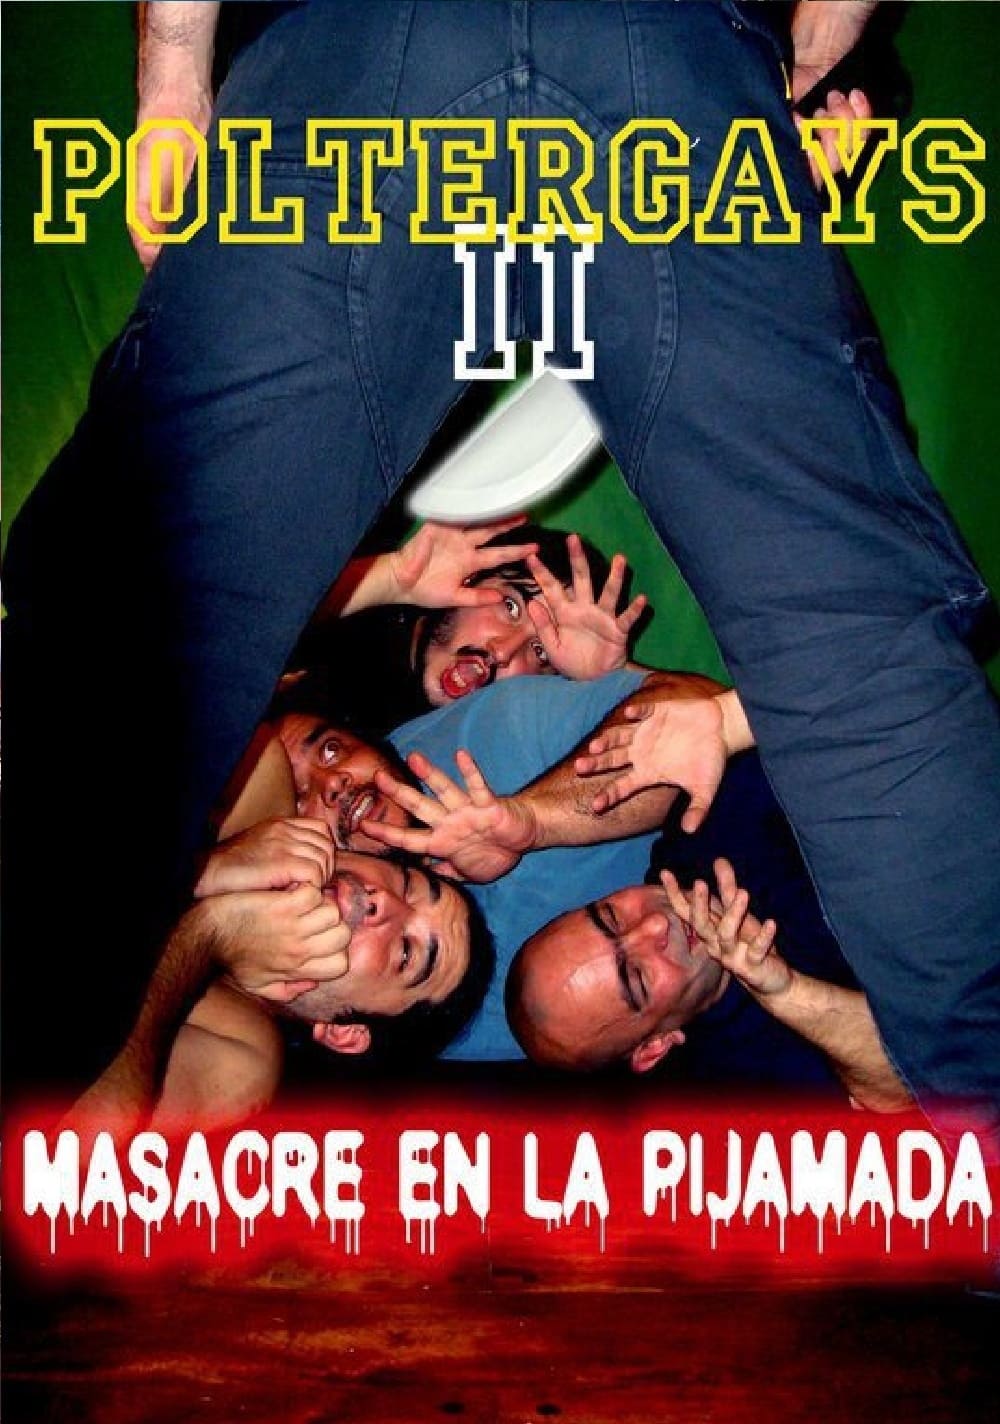 Poltergays 2: Masacre en la Pijamada